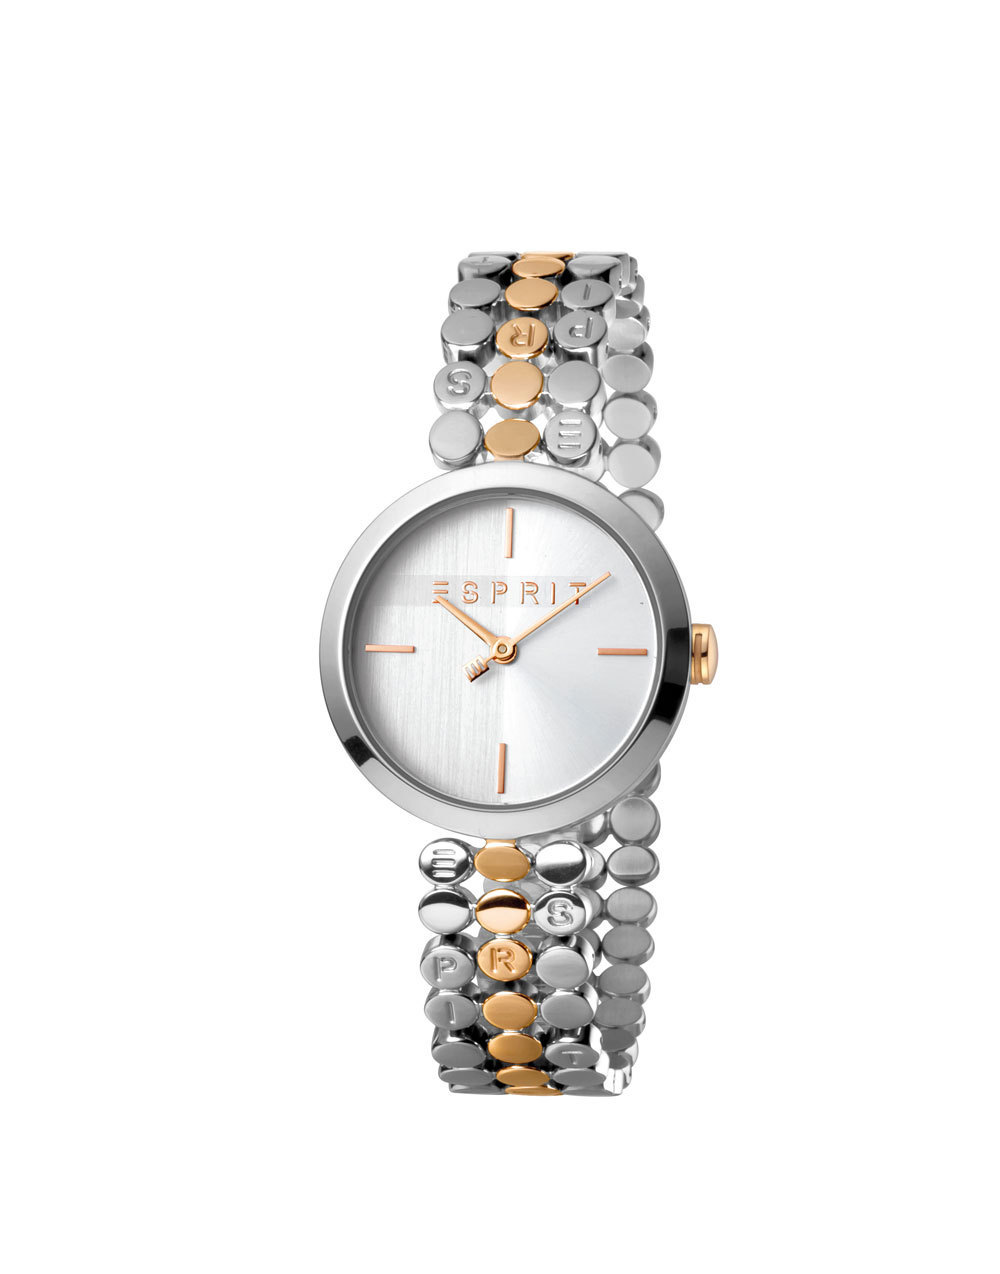 Esprit ES1L018M0075 Bliss T/T Rosegold Silver horloge